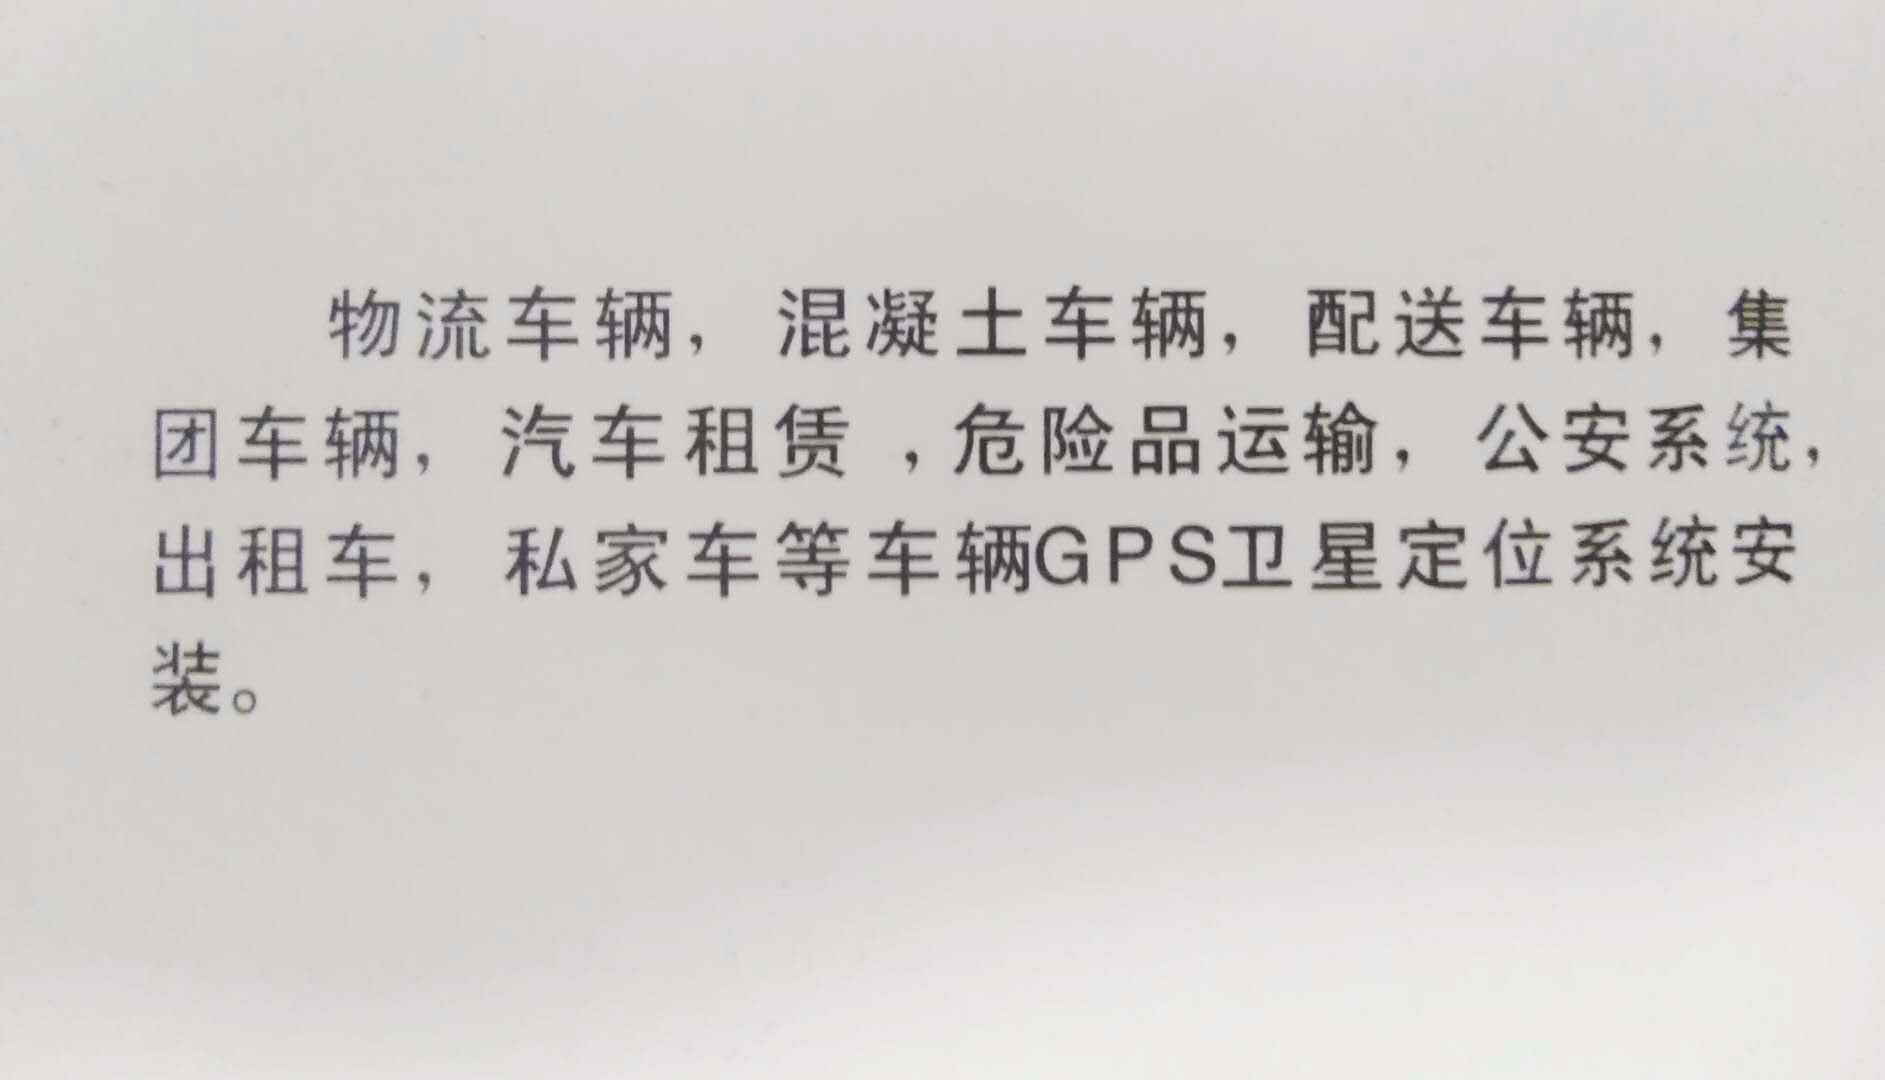 天津各类车辆gps/北斗调度管理,车载GPS卫星定位